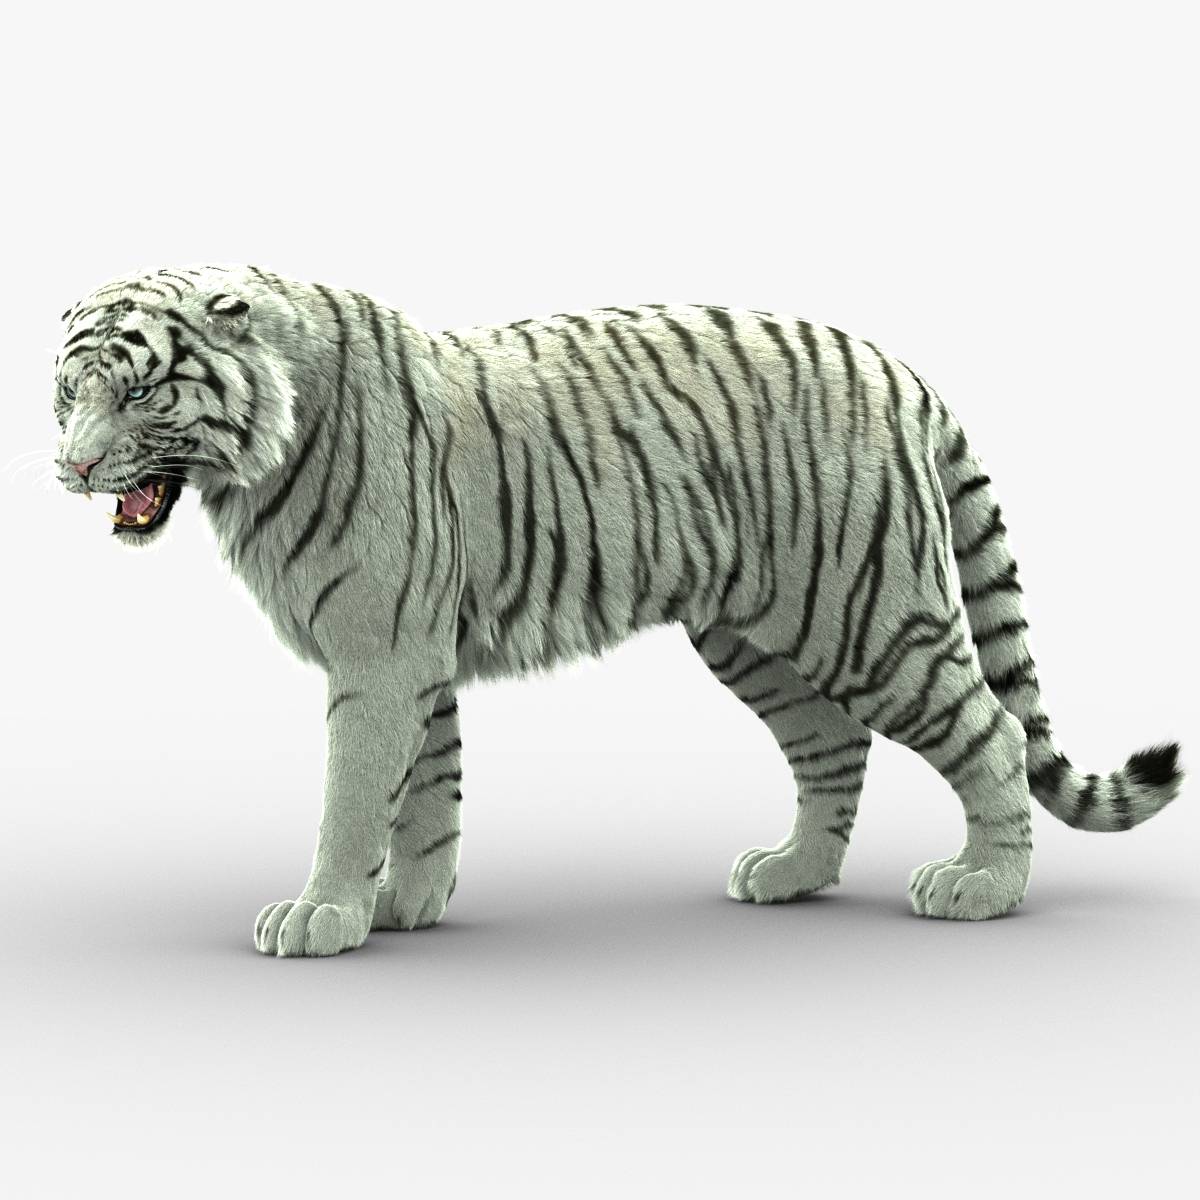 3D Tigers Models